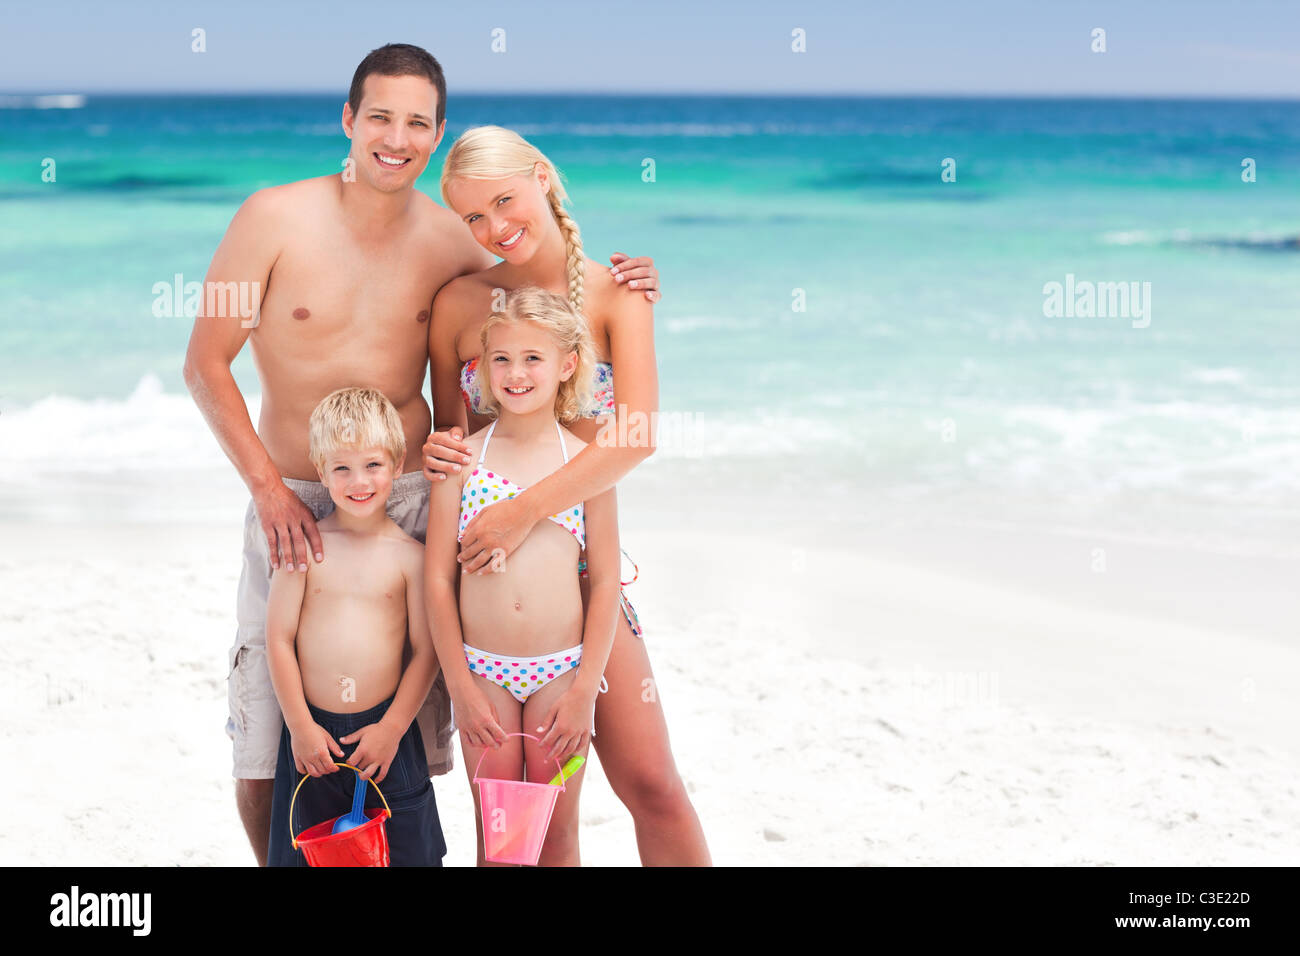 Мамы на нудиском пляже. Семьи на нудитском пляже. Всей семьёй на нудисткий пляж. Семья на диком пляже.